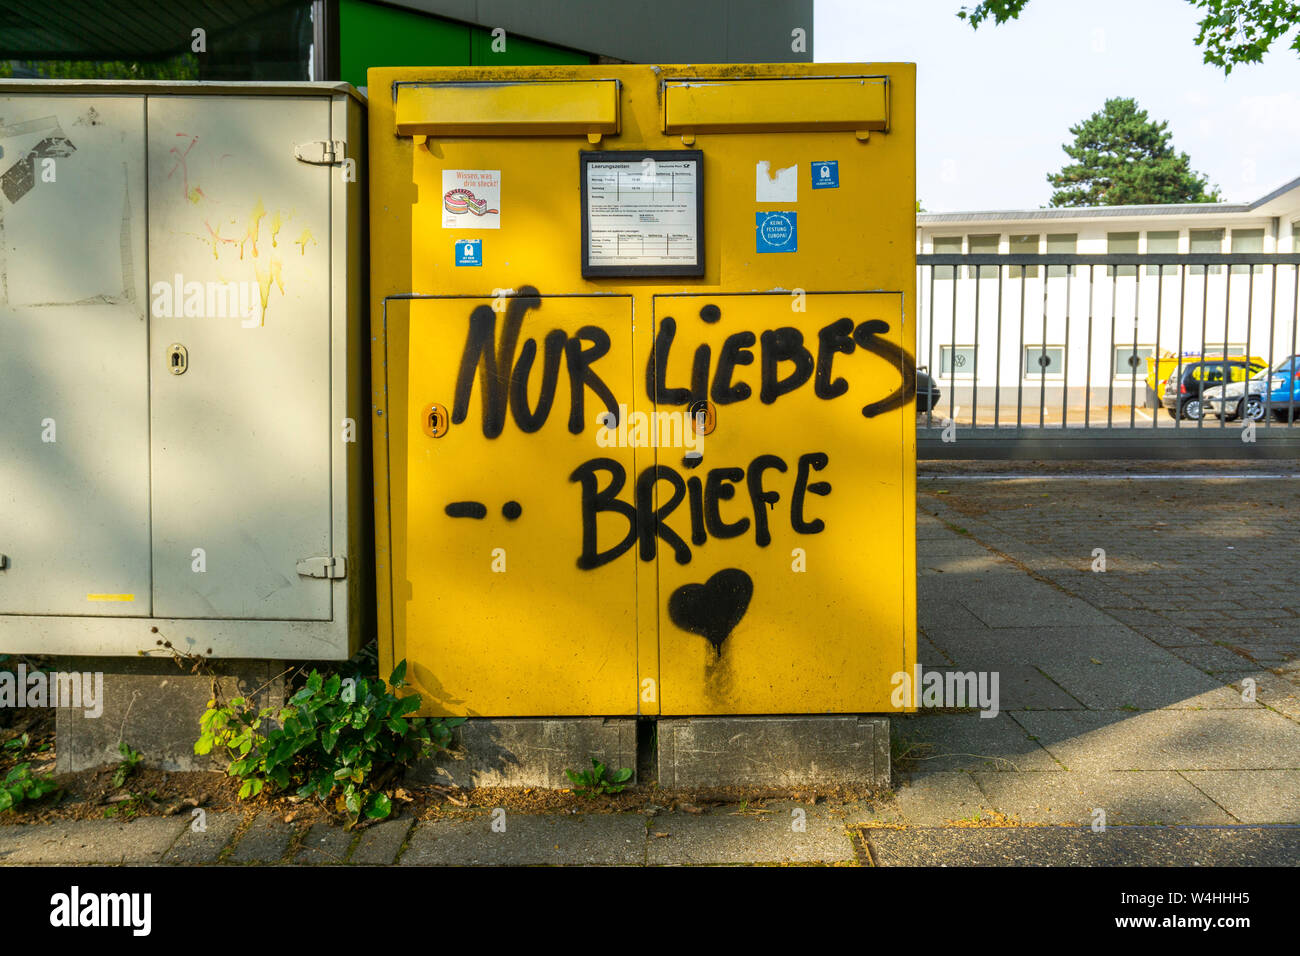 Briefkasten, Postkasten mit einem Spruch besprüht, Nur Liebesbriefe, Essen, NRW, Deutschland,  Grafitti, Stock Photo